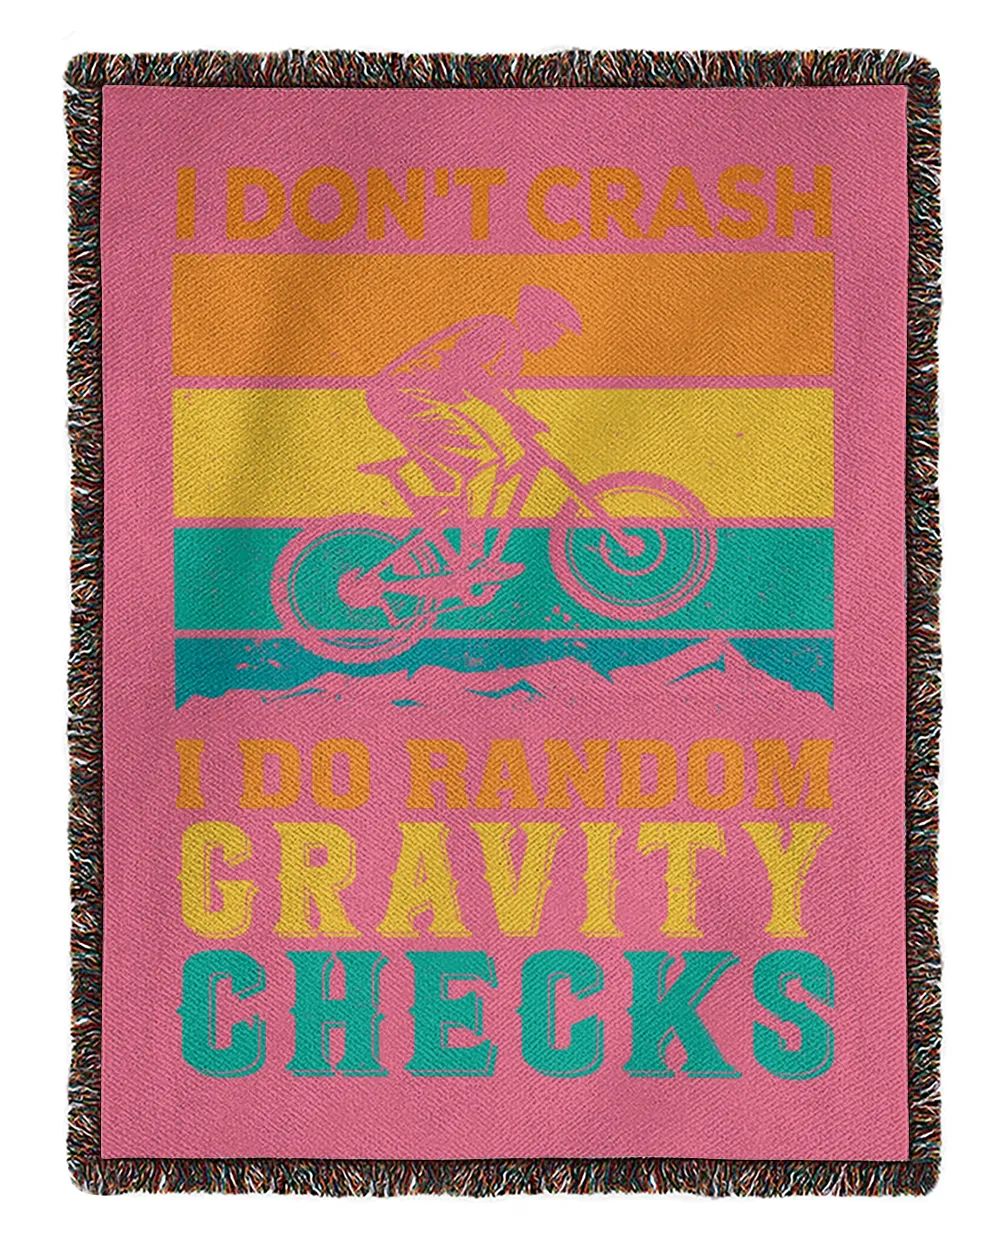 I Don't Crash I Do Random Cravity Checks